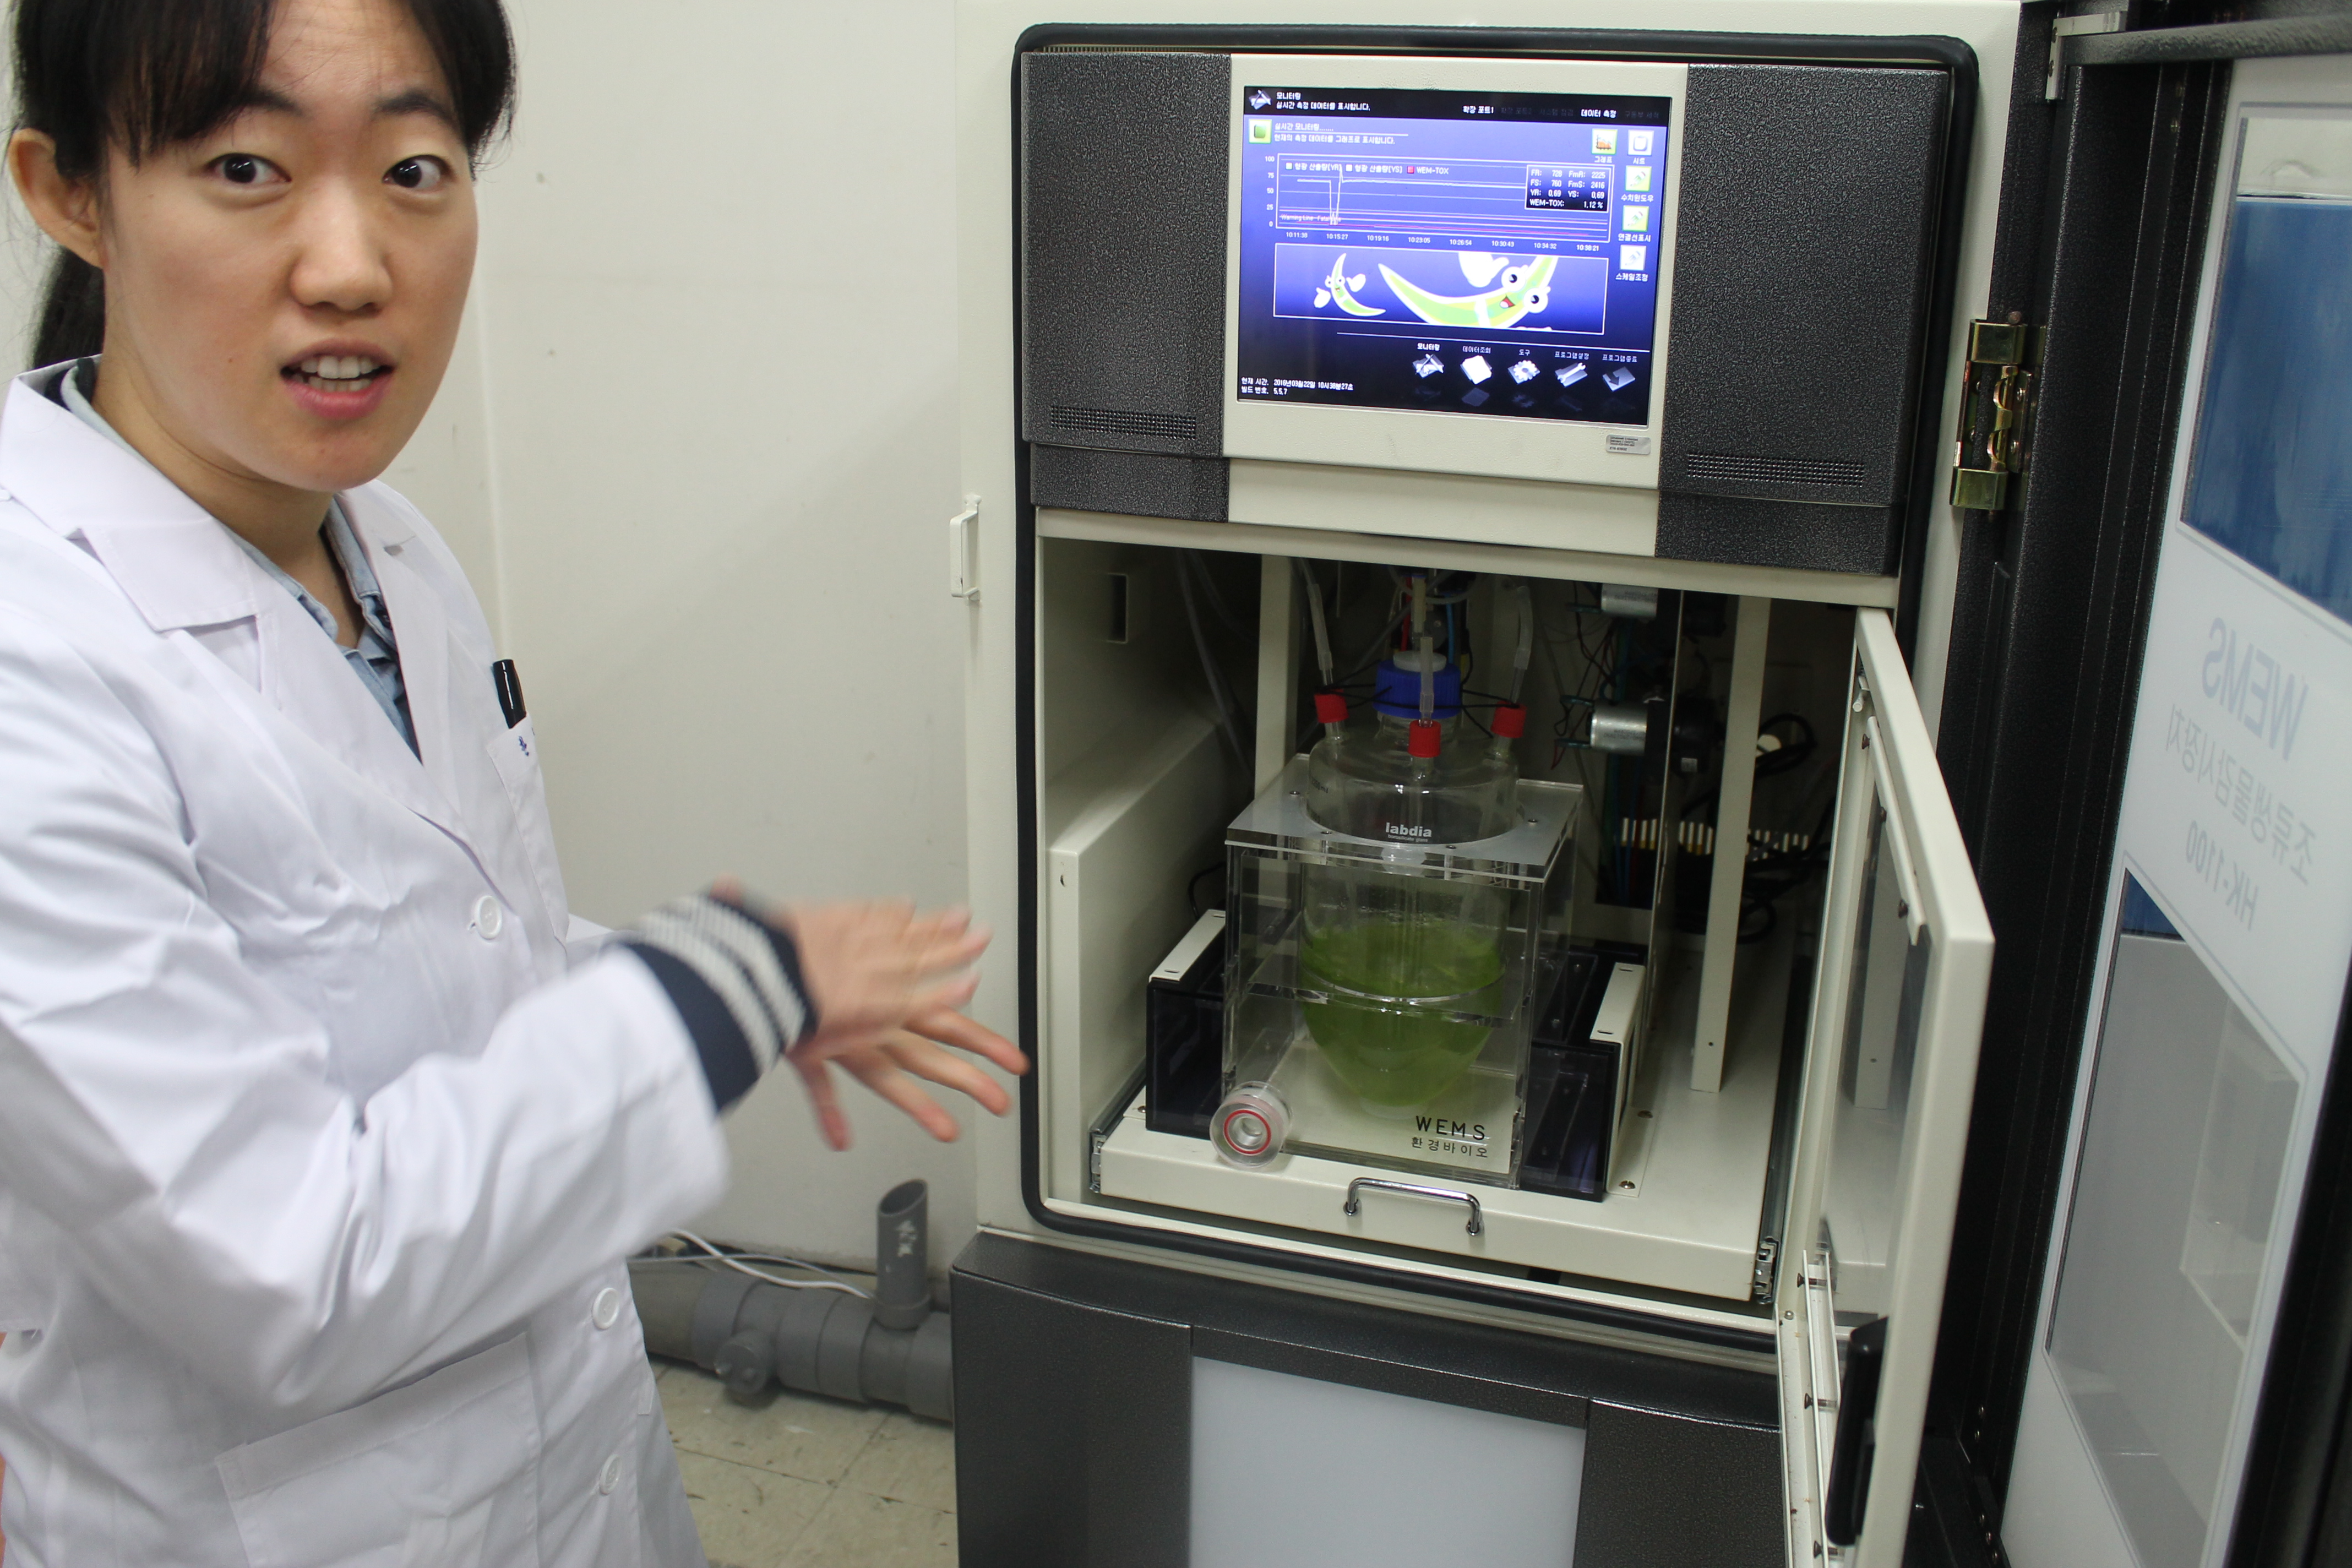 한지선 연구사가 자양취수장에 설치된 반달말 생물감시장치에 대해 설명하고 있다.